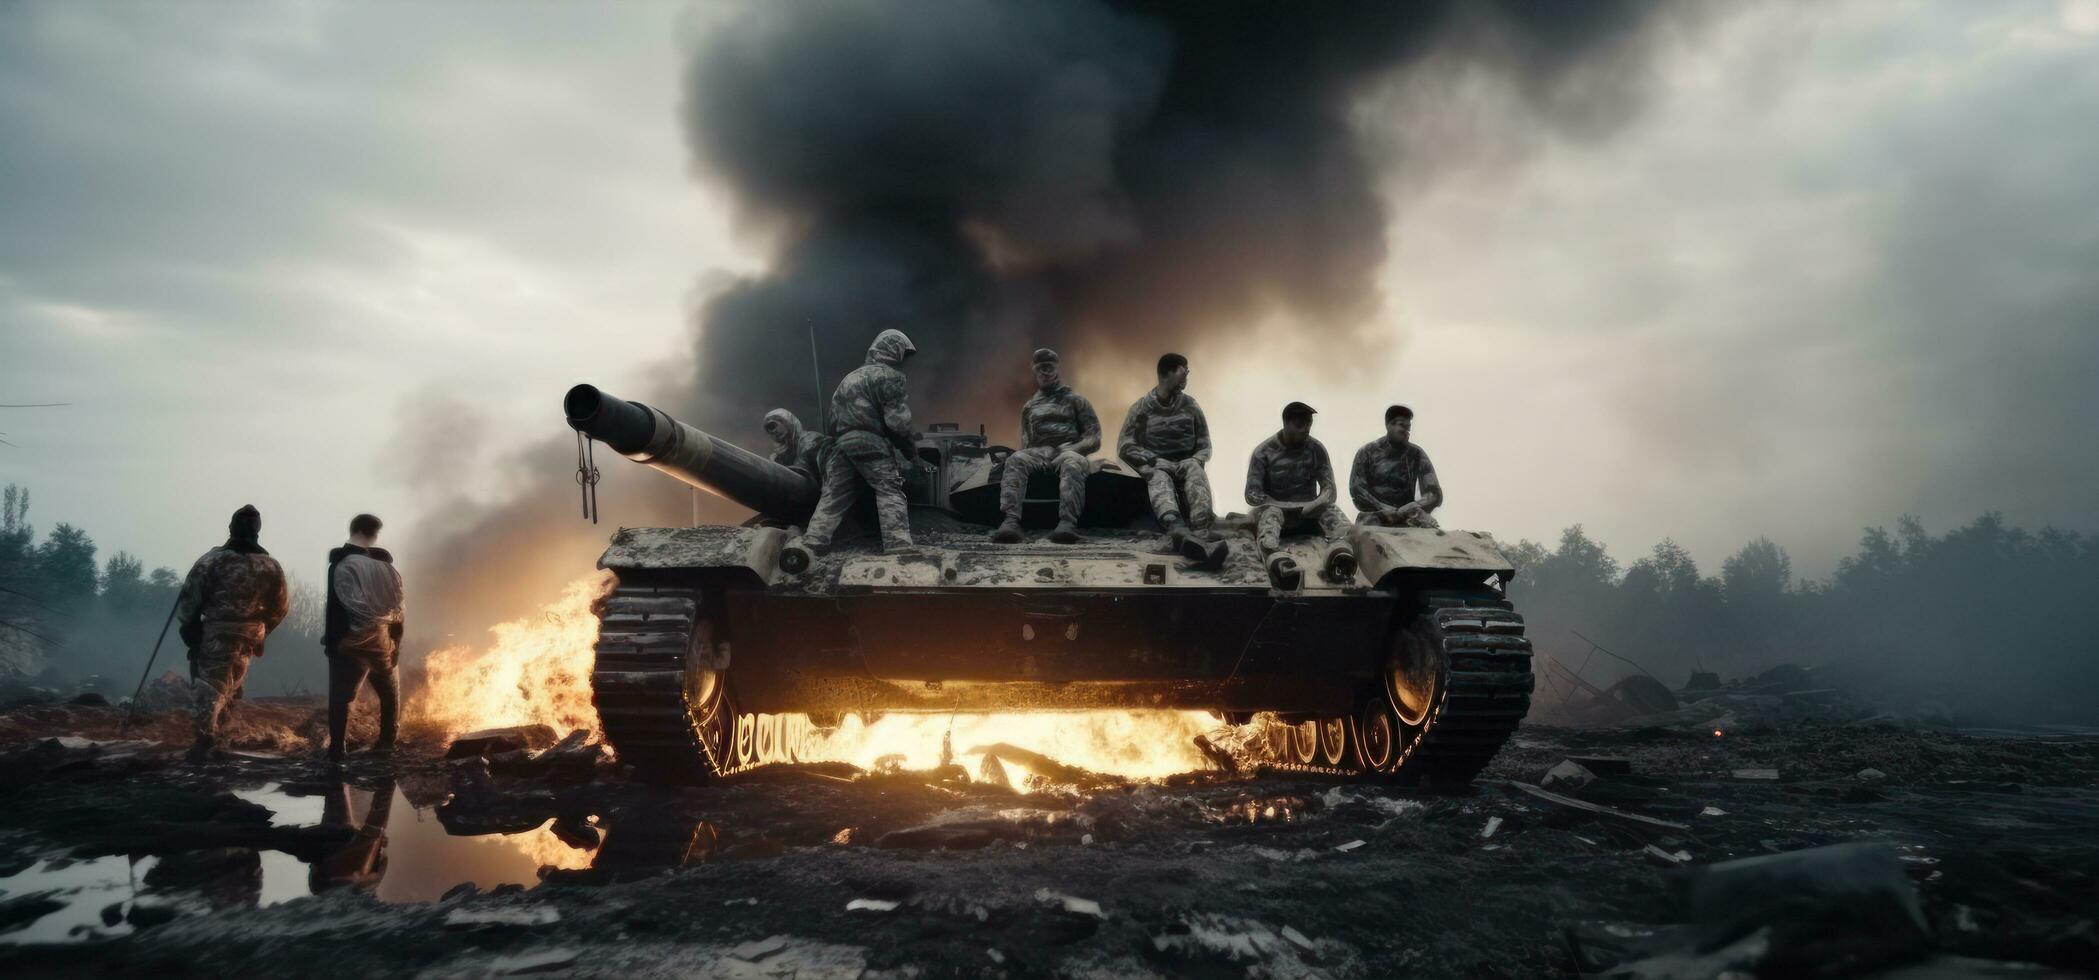 militaire blanc Hommes sur une brûlé réservoir photo